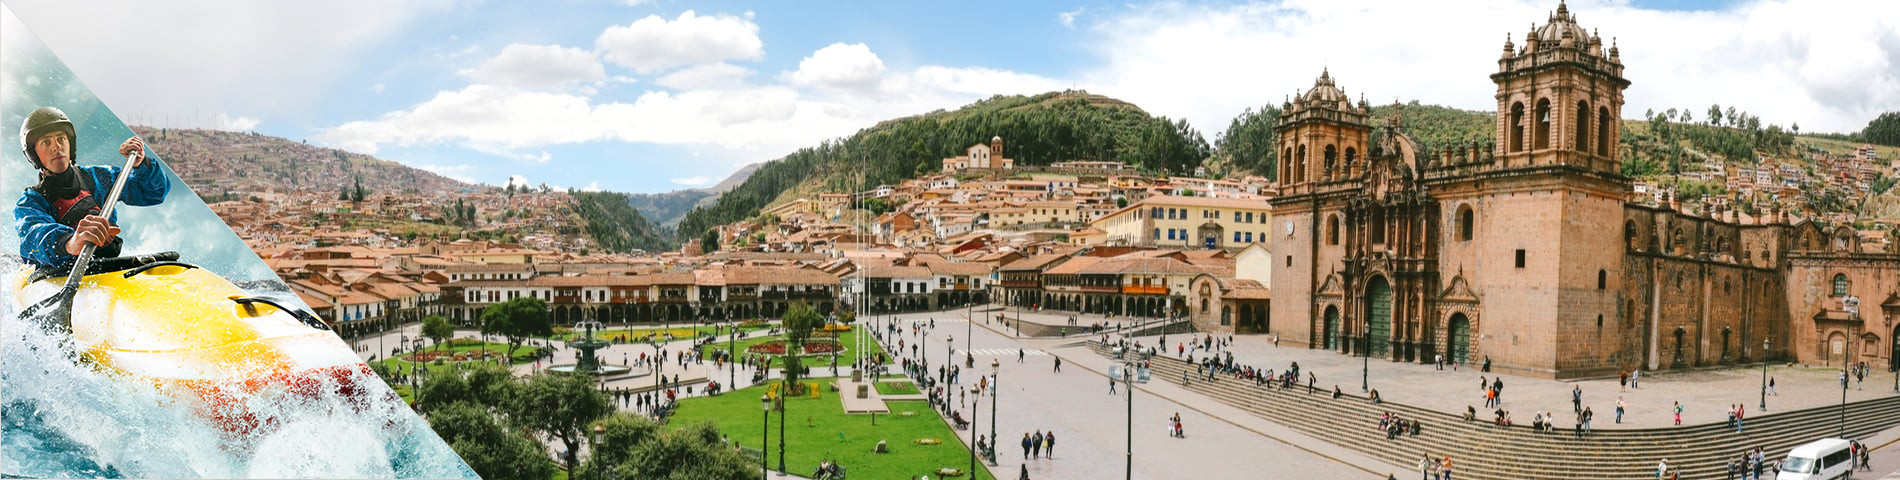 Cuzco - Espanja & seikkailu-urheilu